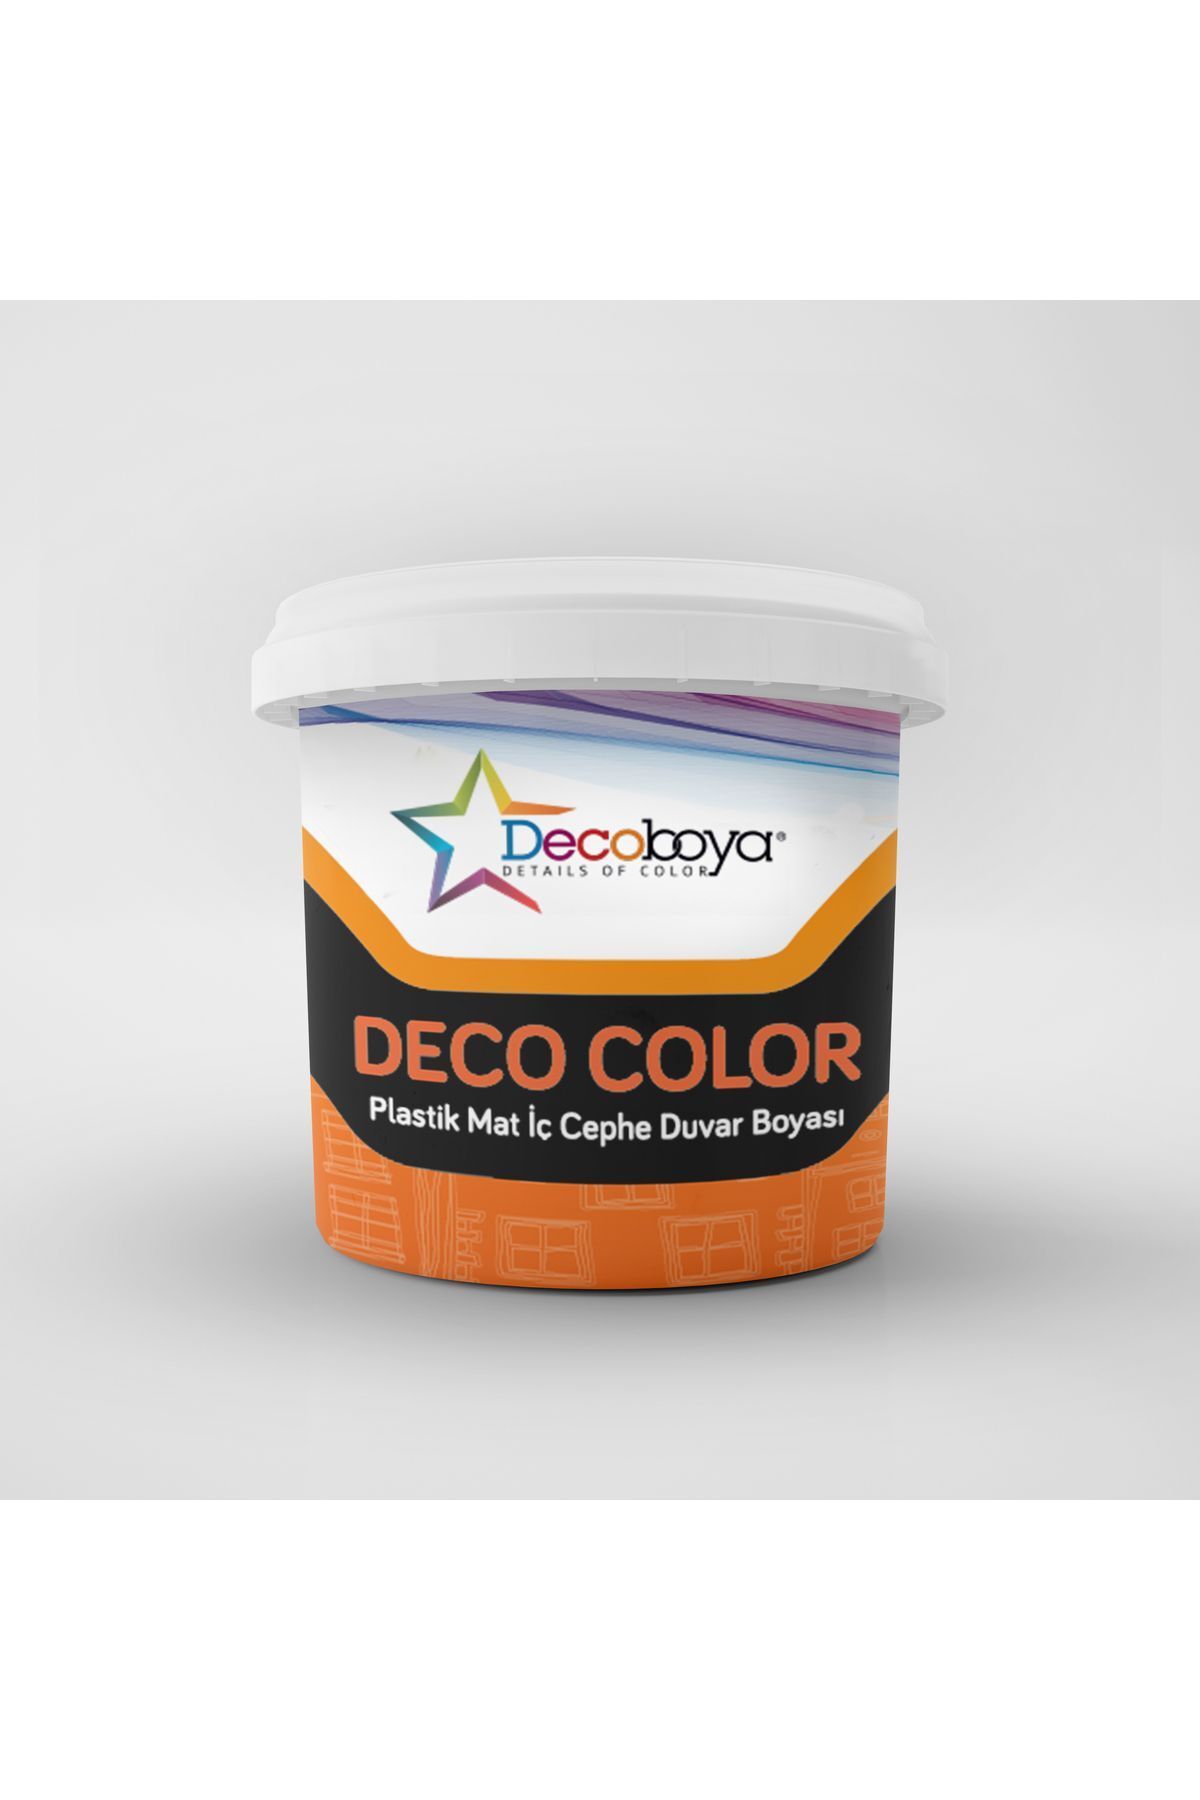 DecoBoya Deco Color Plastik Mat Iç Cephe Duvar Boyası 10 Kg Siyah Özel Renk